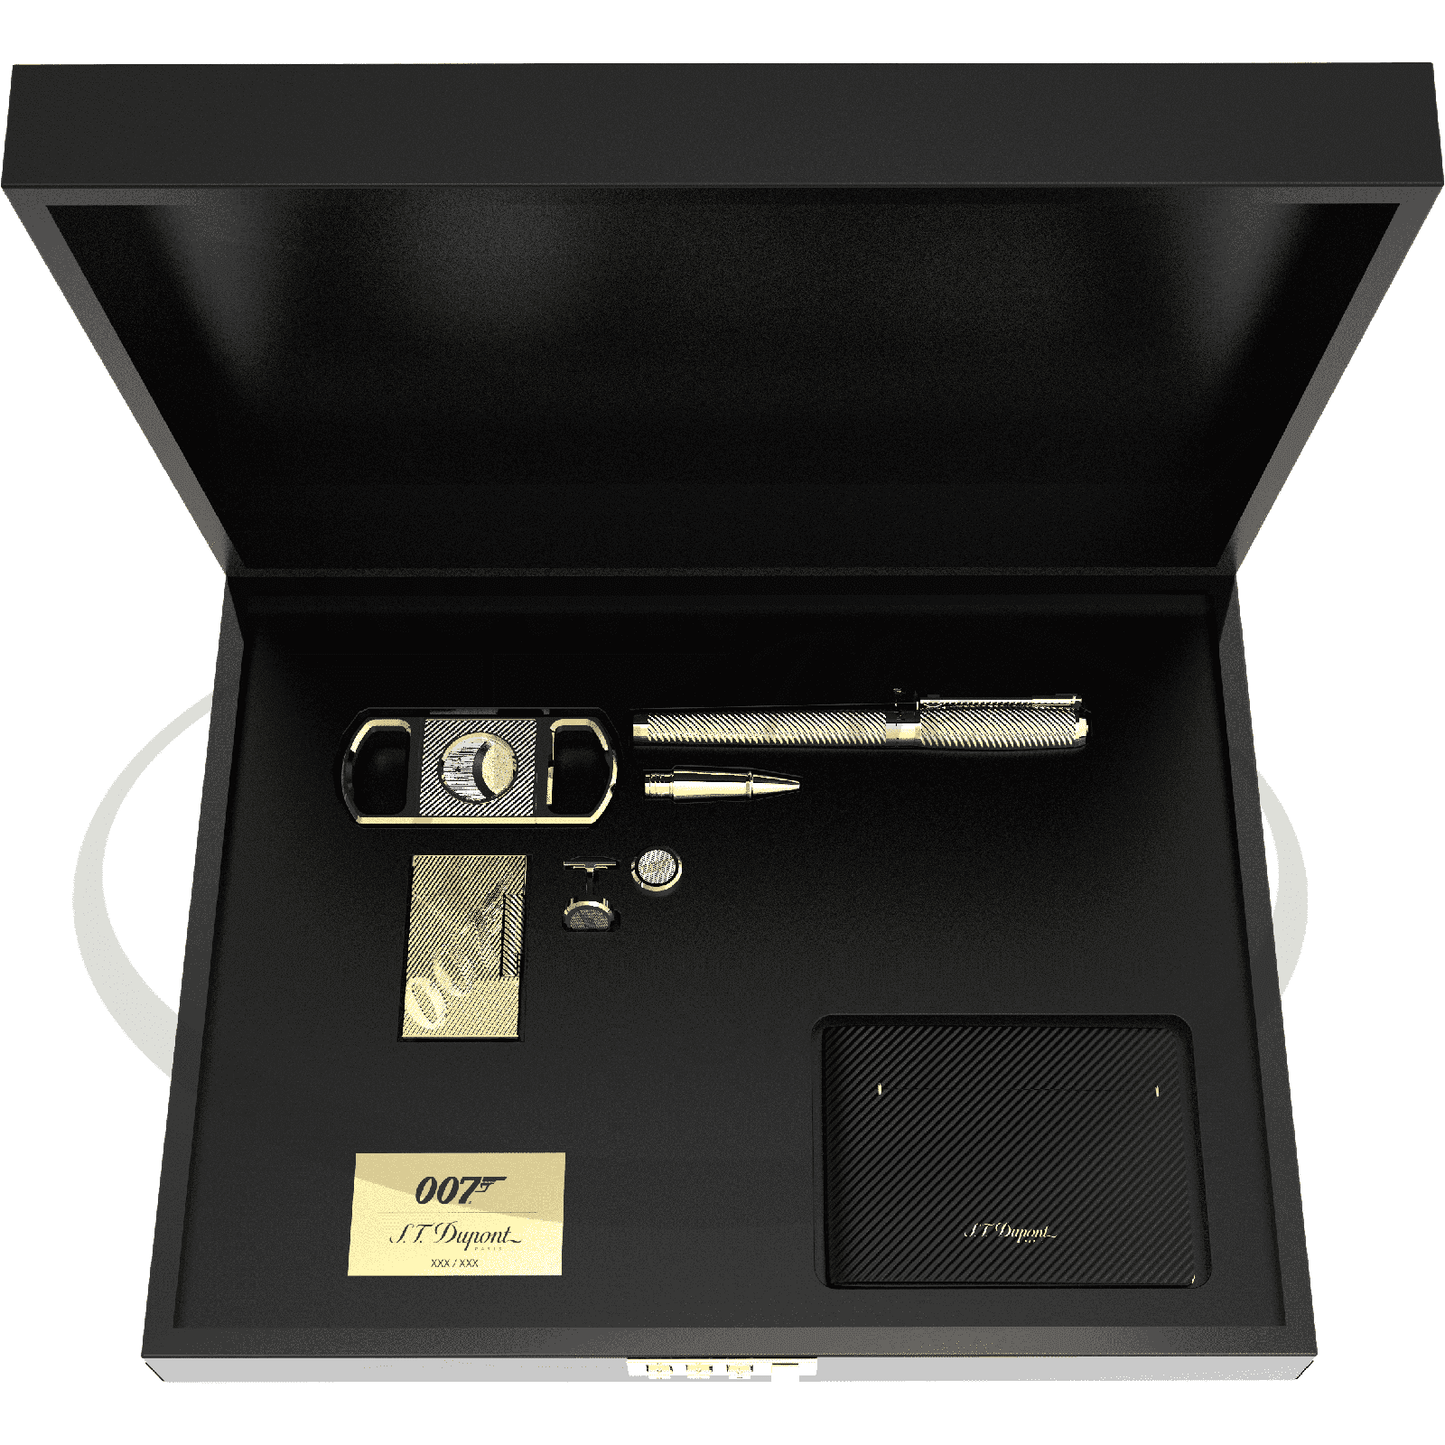 S.T. Dupont 007 Limited Edition James Bond Gold Collectors Set 5 pieces